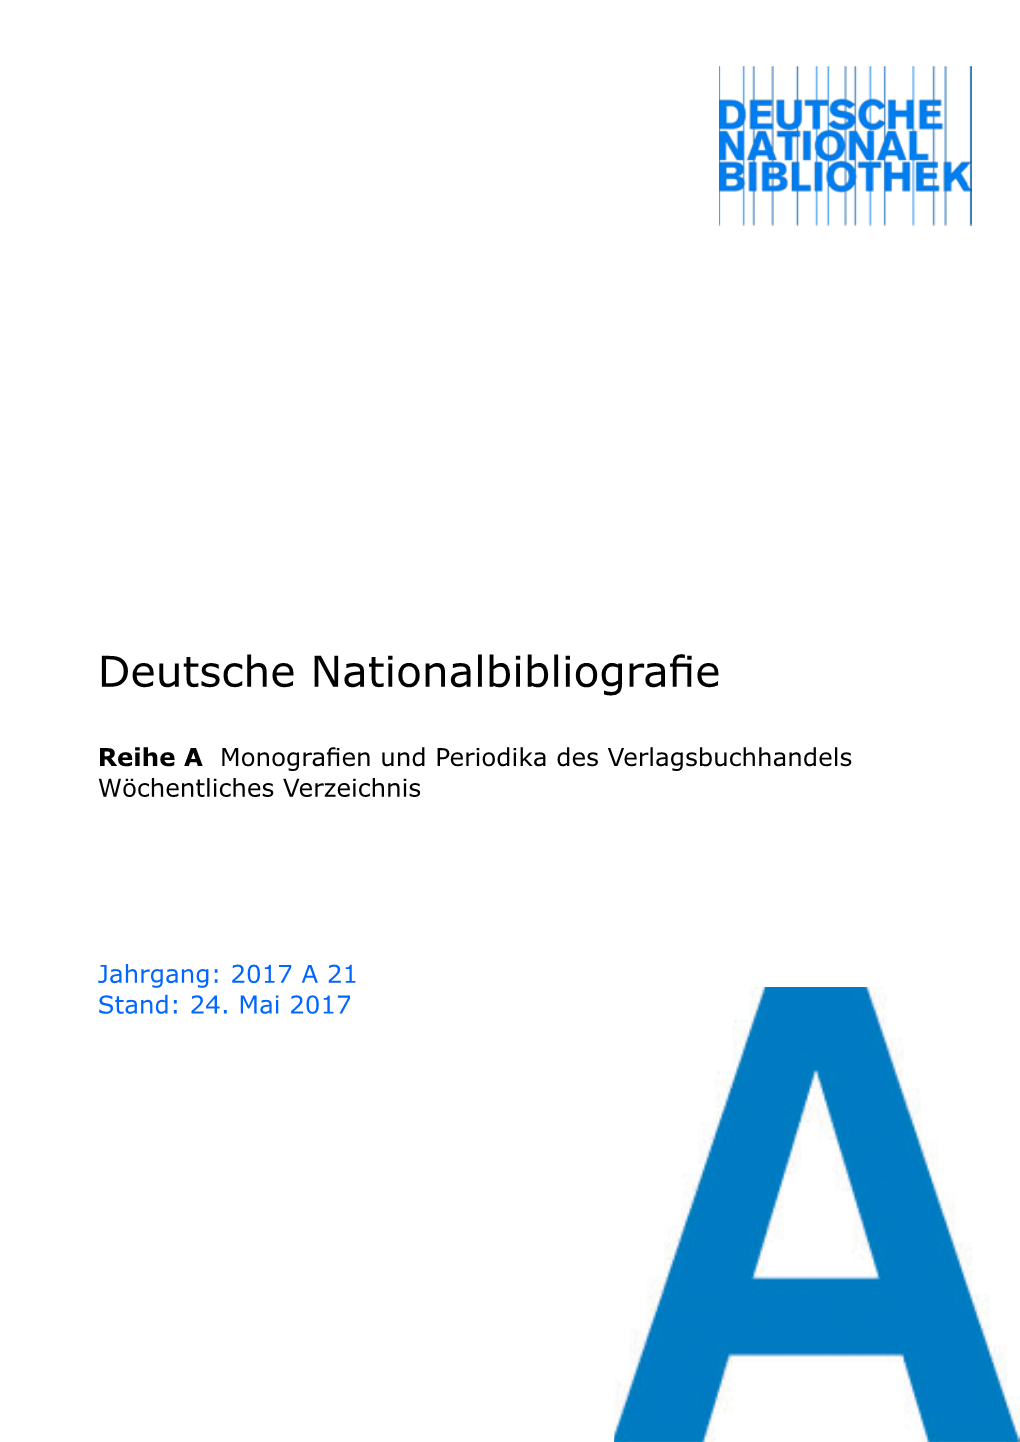 Deutsche Nationalbibliografie 2017 a 21